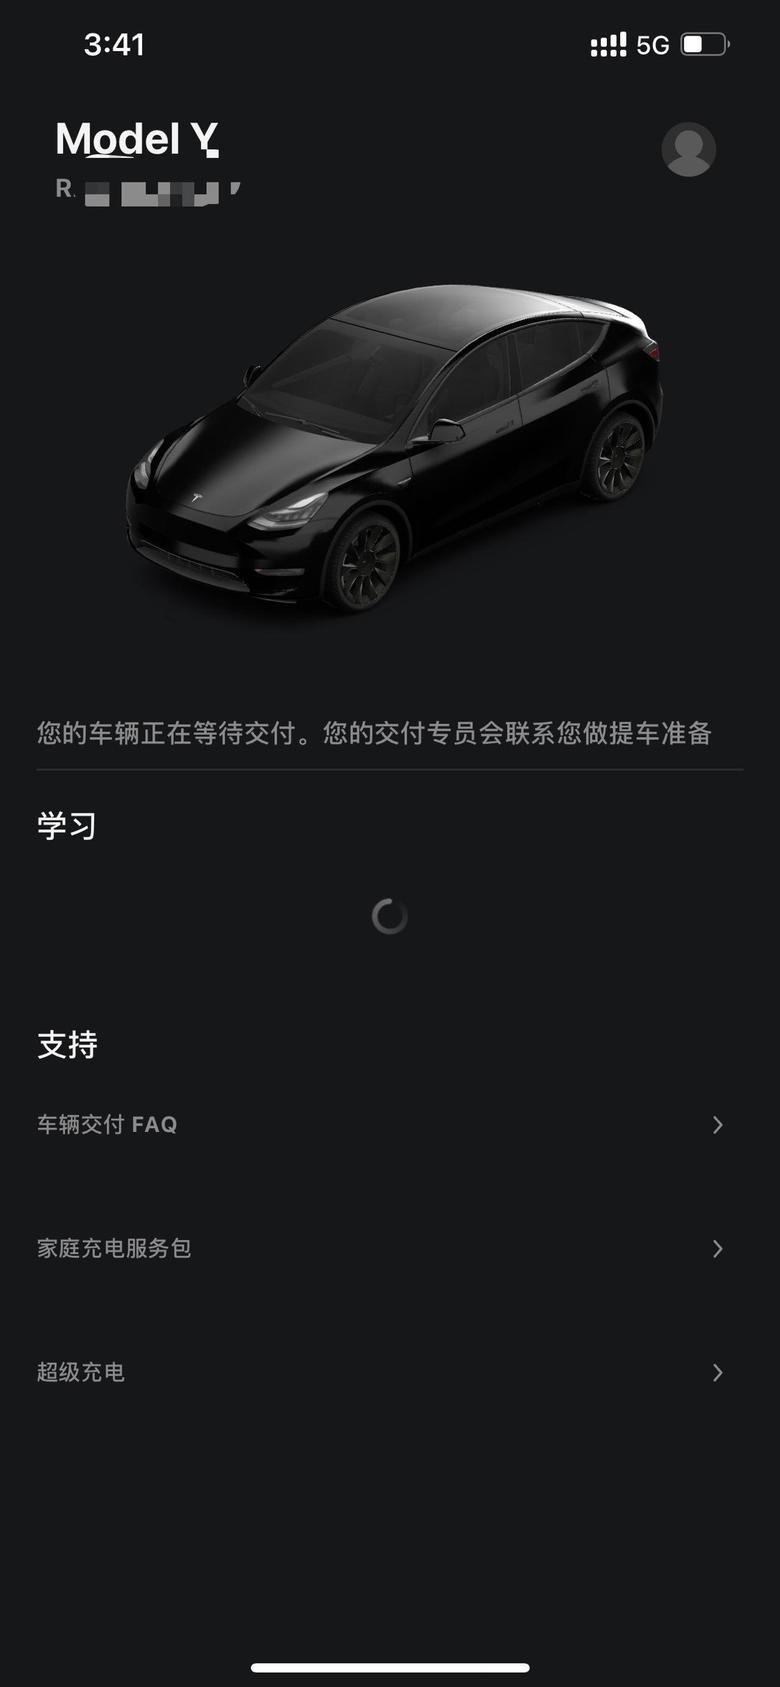 model y 上海黑20193，9.6号订单，希望在国庆后就能提车，期间不断试驾过，除了动能回收和尾门异响其他都能接受。非常喜欢my的空间和外观，以后午休能去车里睡了。等待中